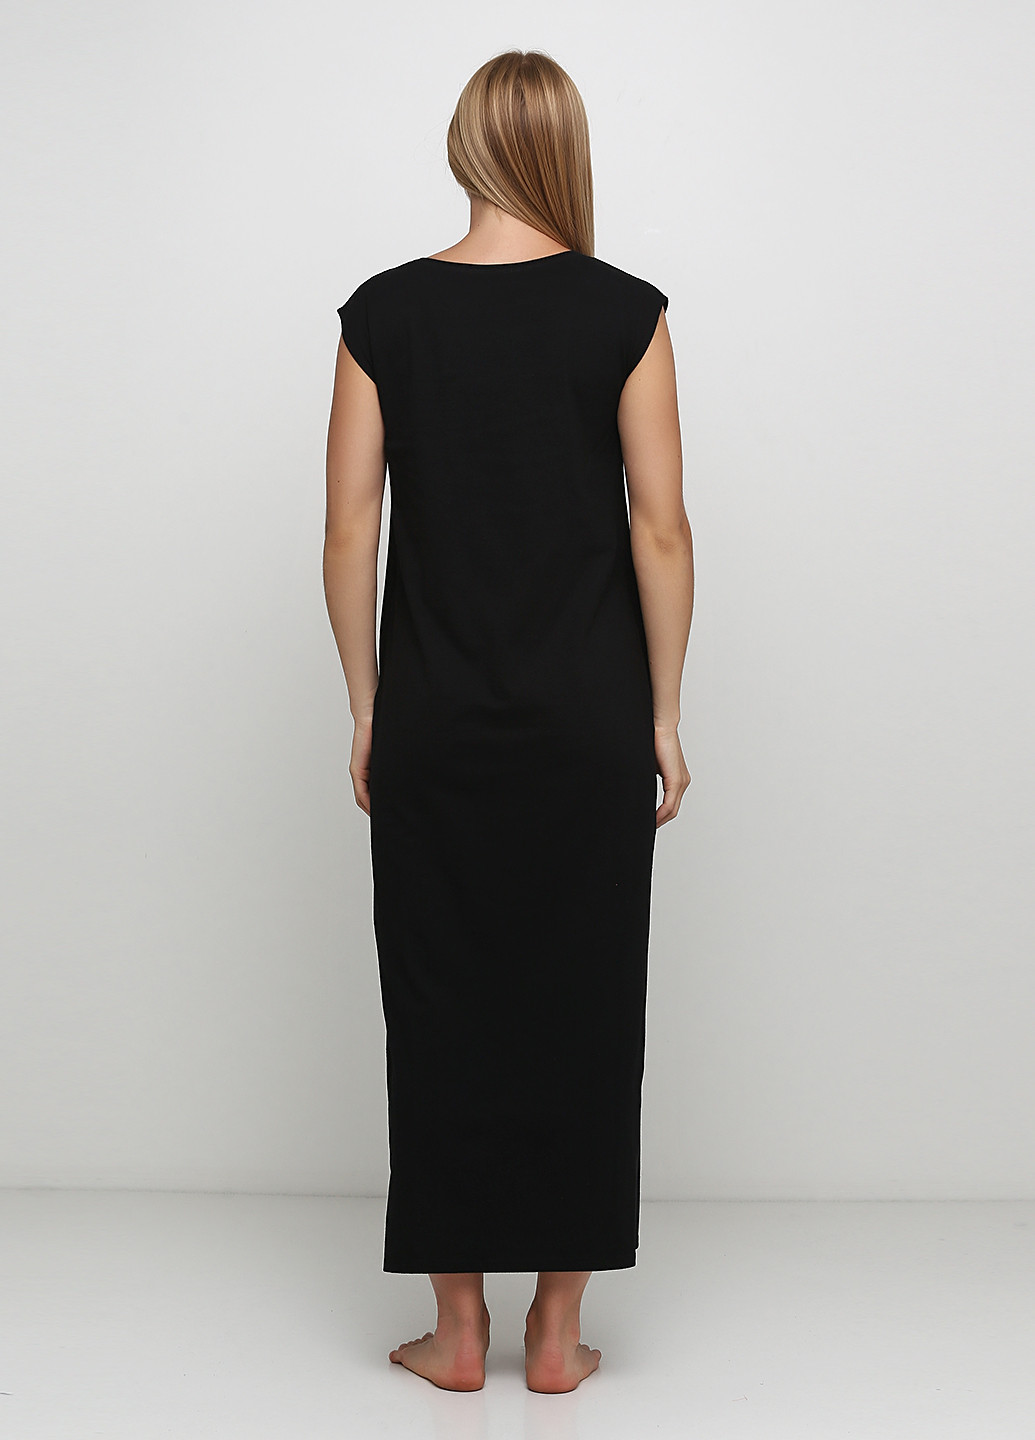 Черное домашнее платье платье-футболка Роза однотонное